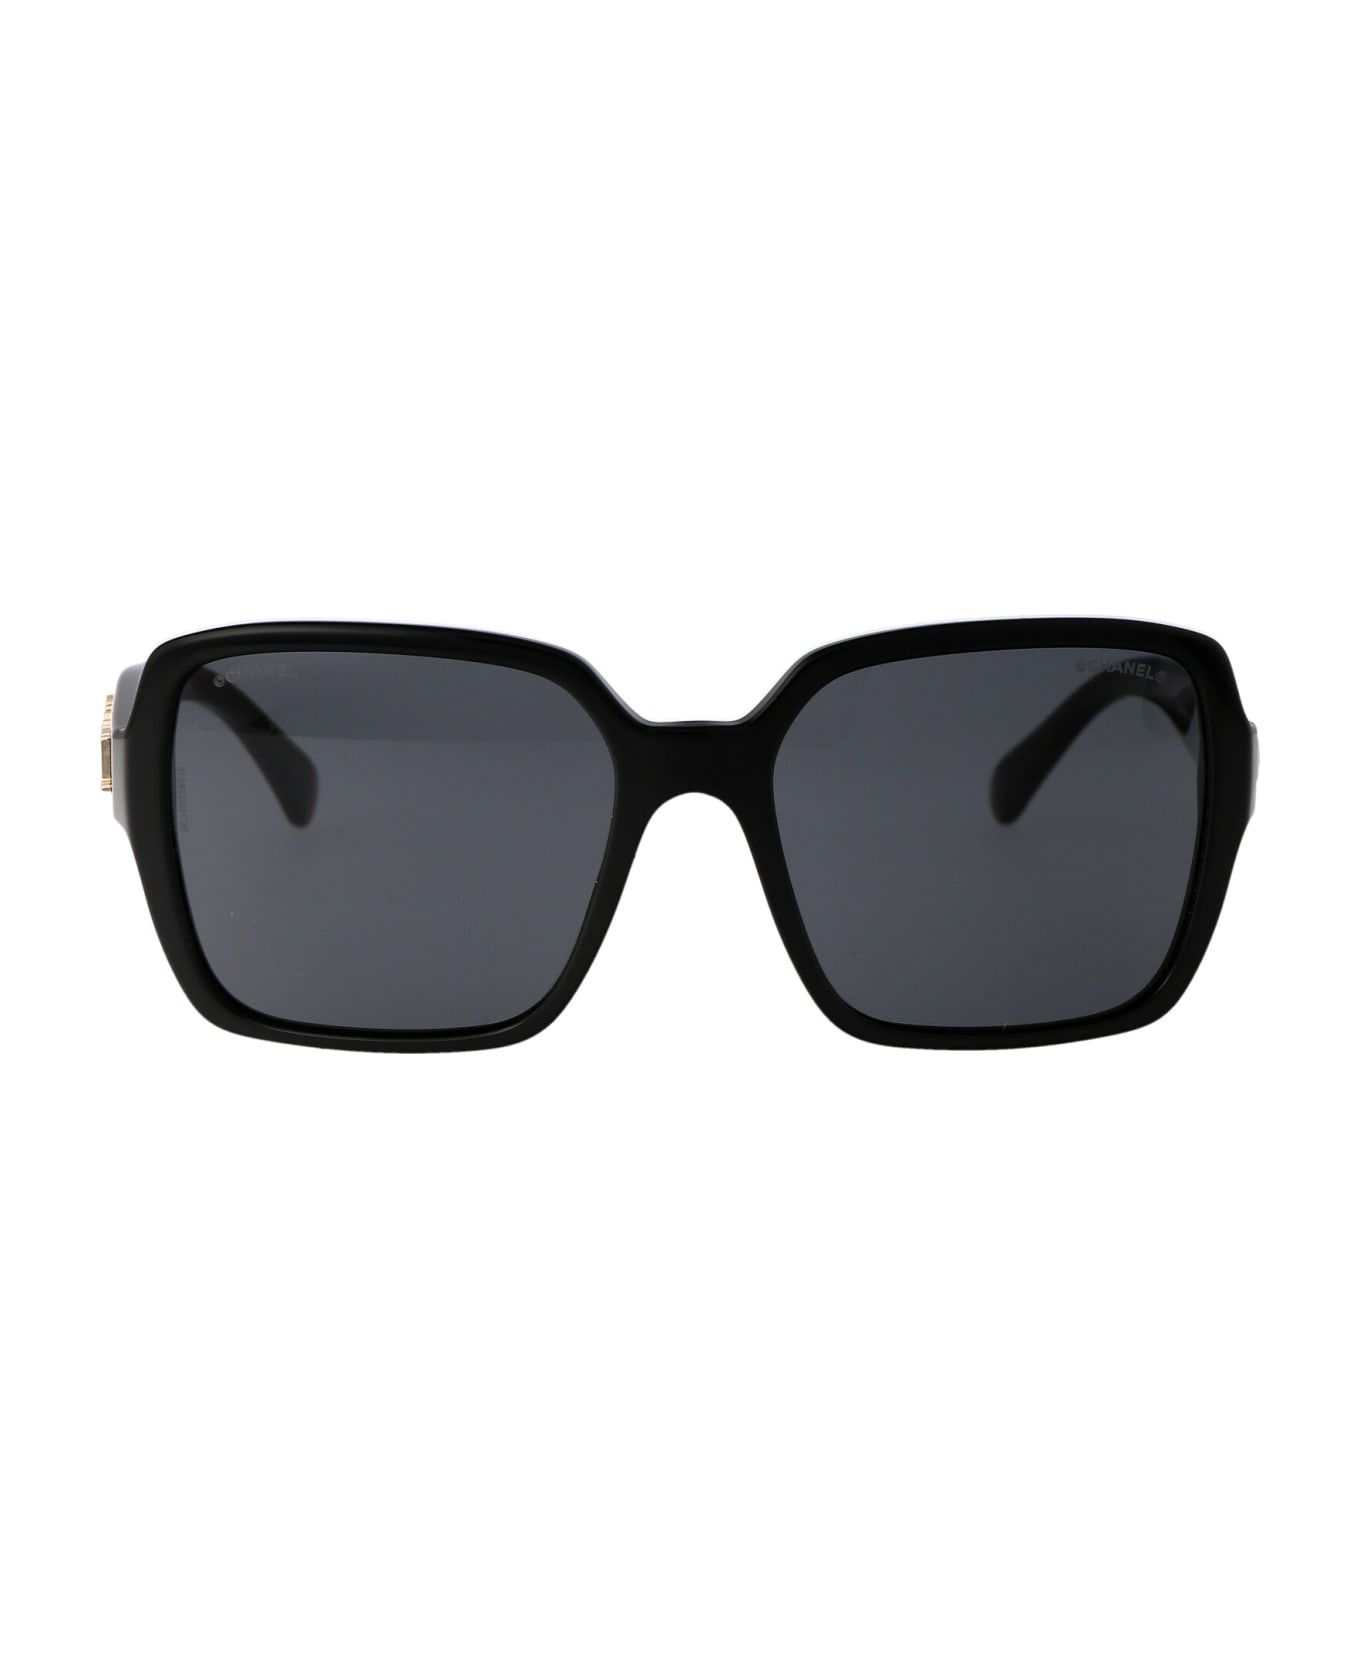 Chanel 0ch5408 Sunglasses - C622S4 BLACK